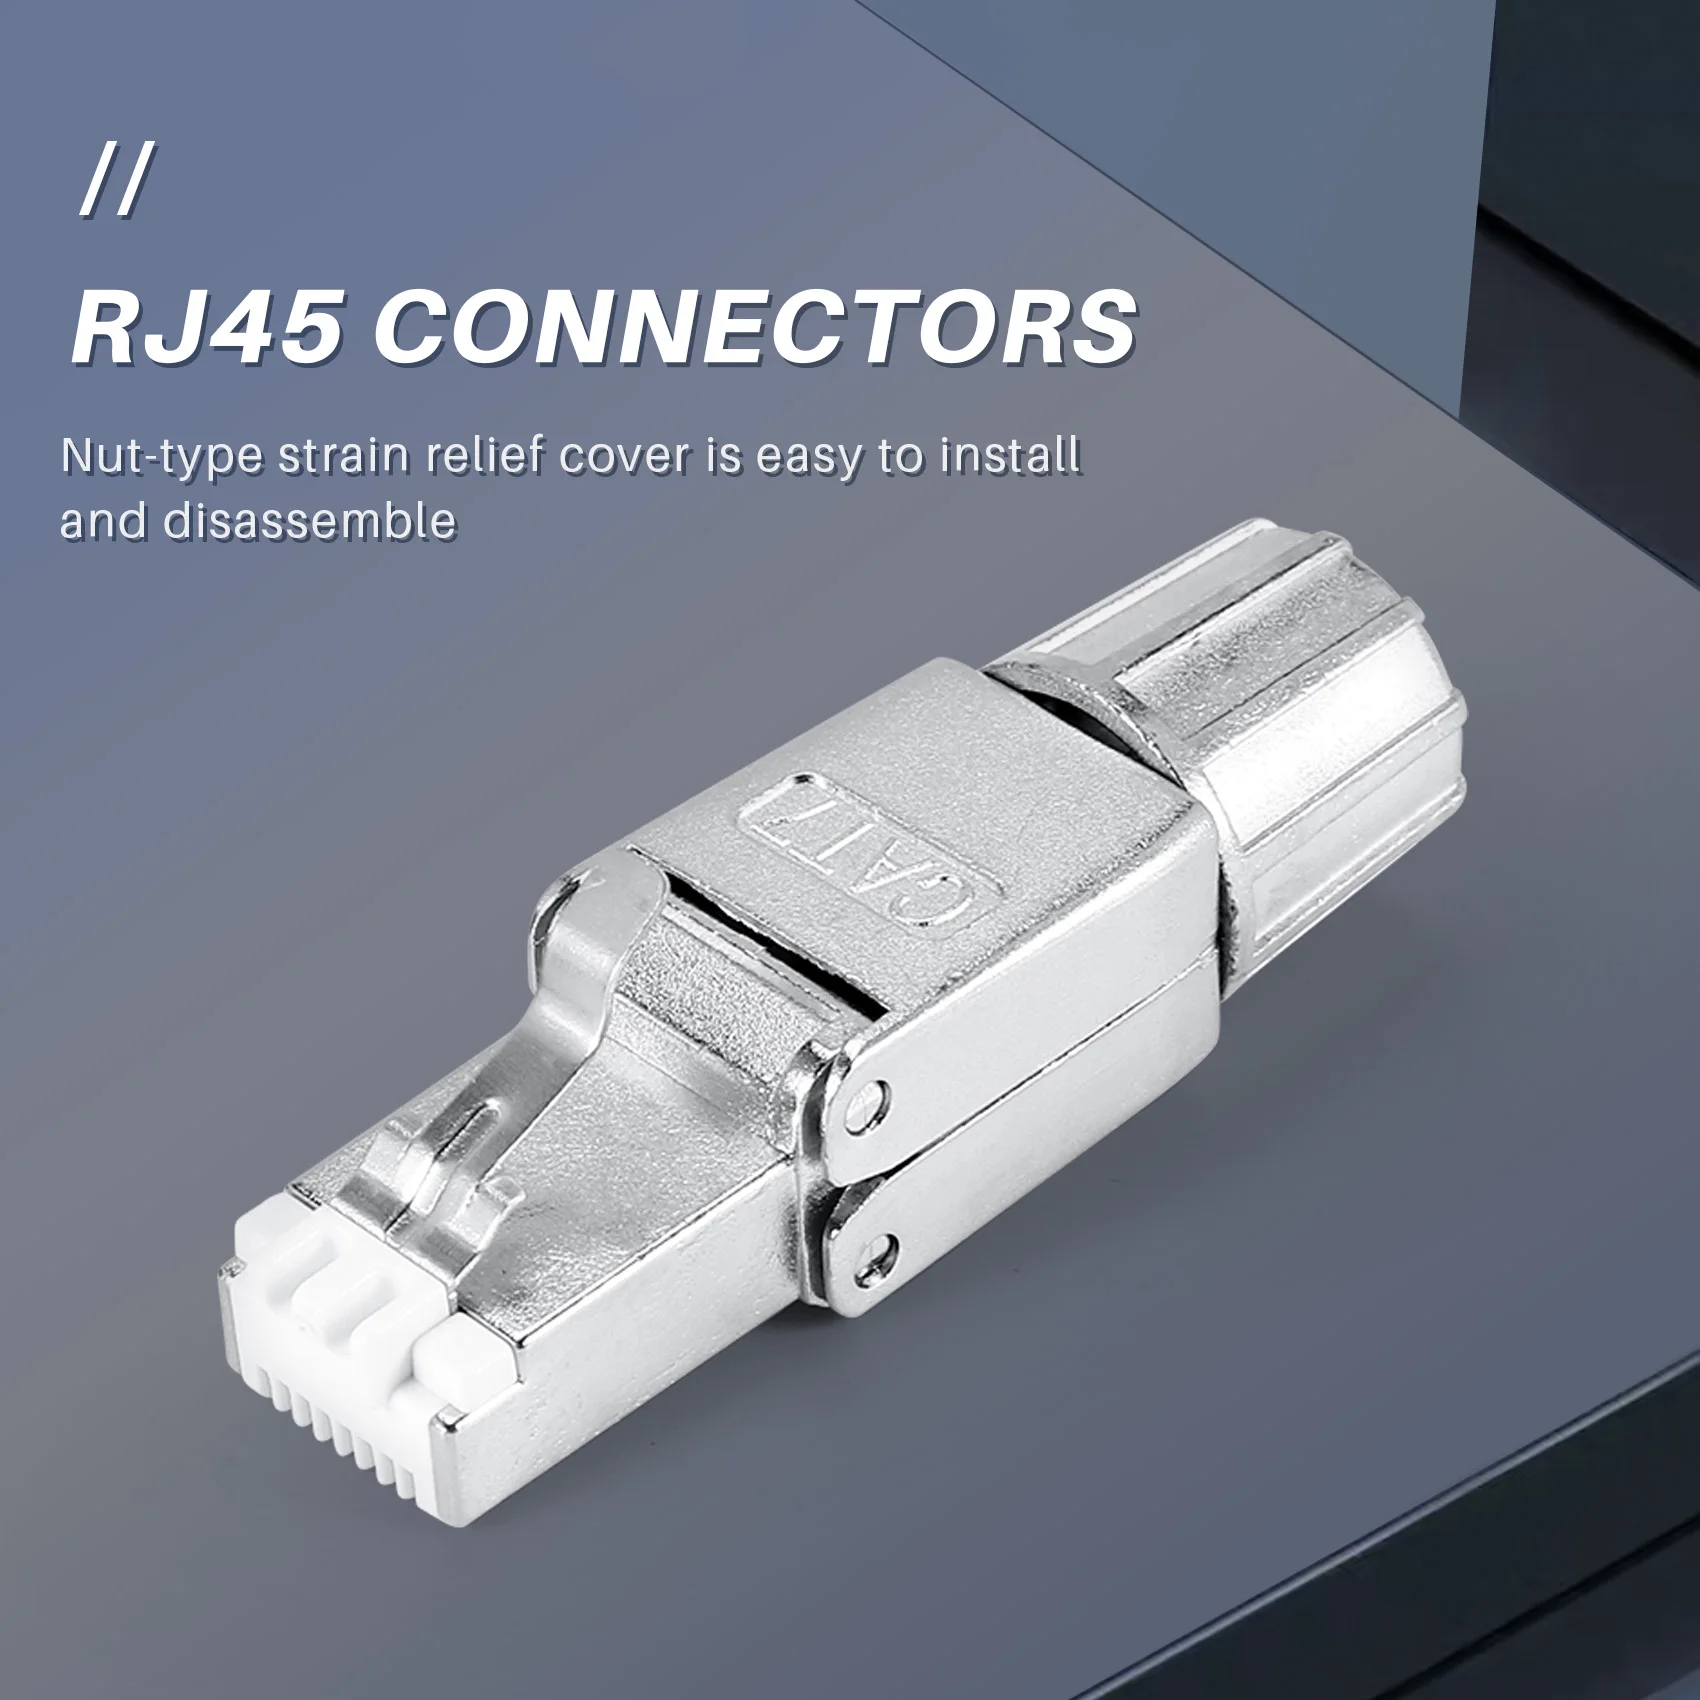 Съединители RJ-45 Cat7, за Многократна употреба екранирани конектори Ethernet, Интернет-щекер, бърз монтаж в полеви условия.